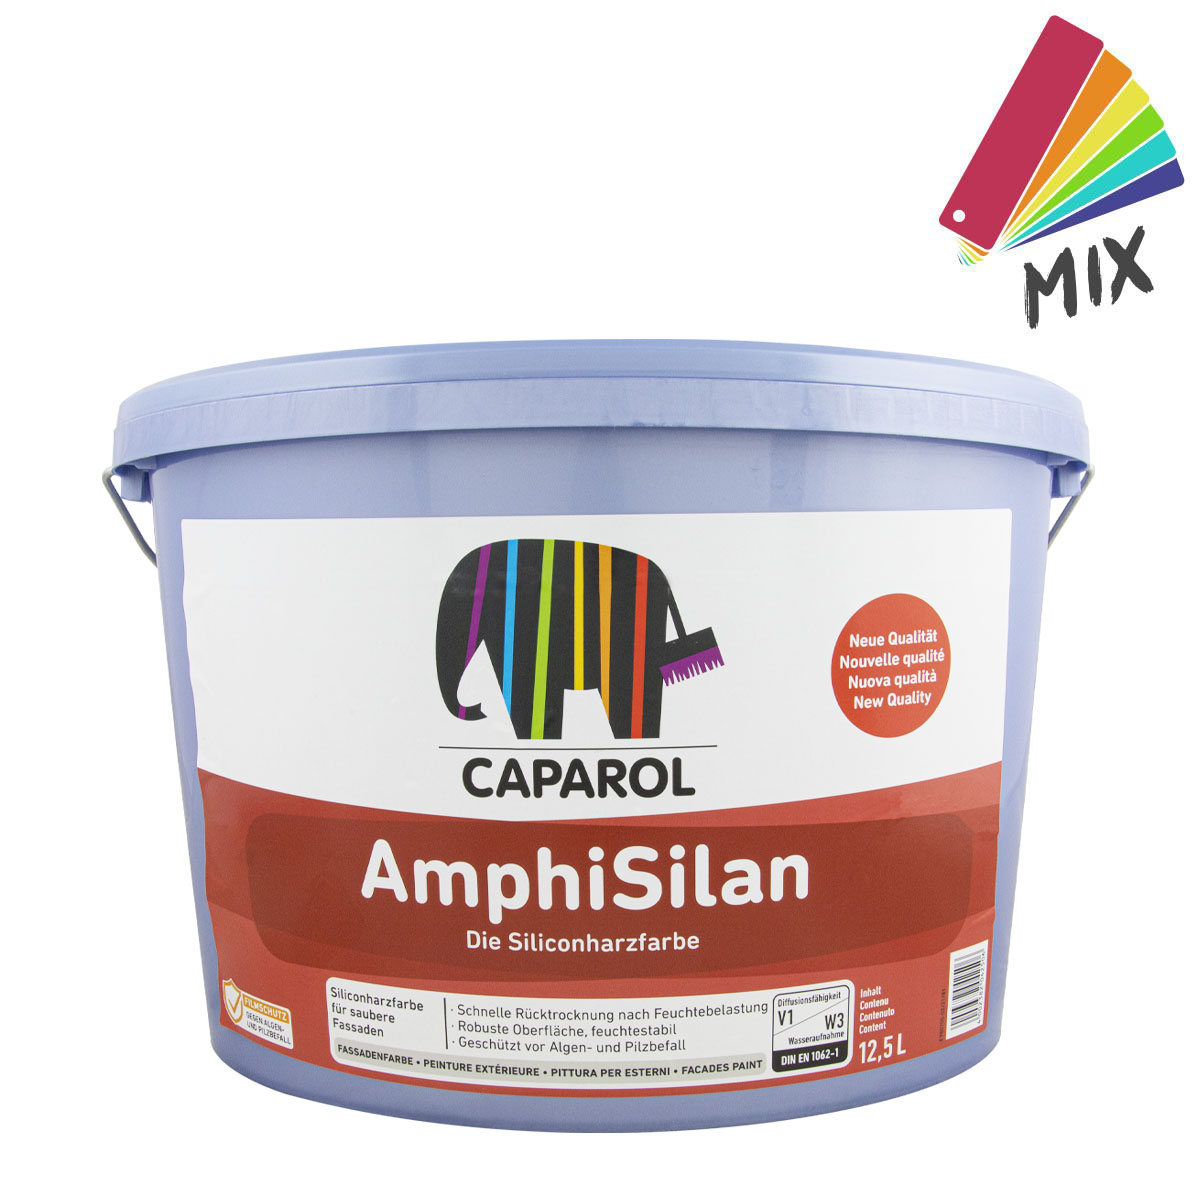 Caparol AmphiSilan 12,5L MIX PG S ,Siliconharz, Nano-Quarz